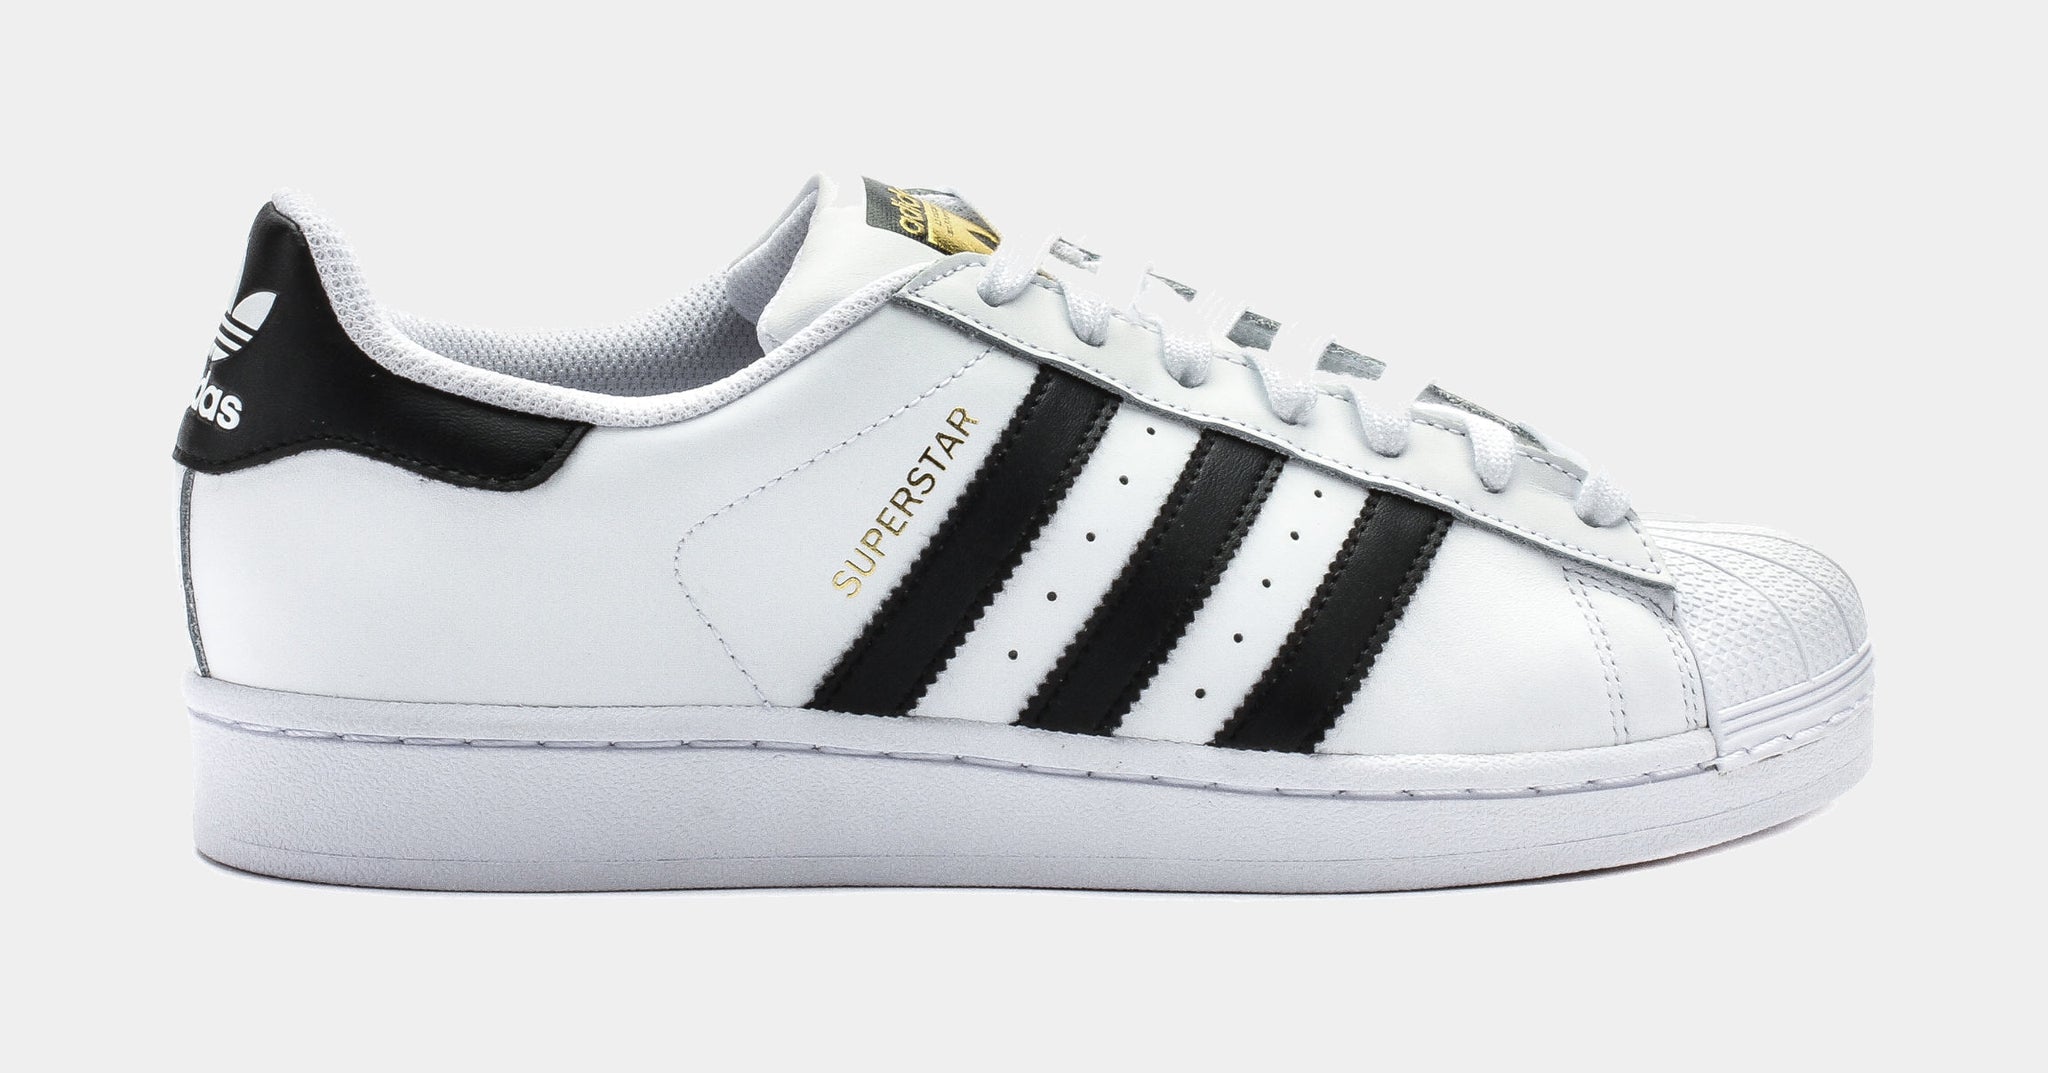 adidas Superstar 2 Original Shell Toe Lifestyle Shoe White Black C77124 – Shoe Palace